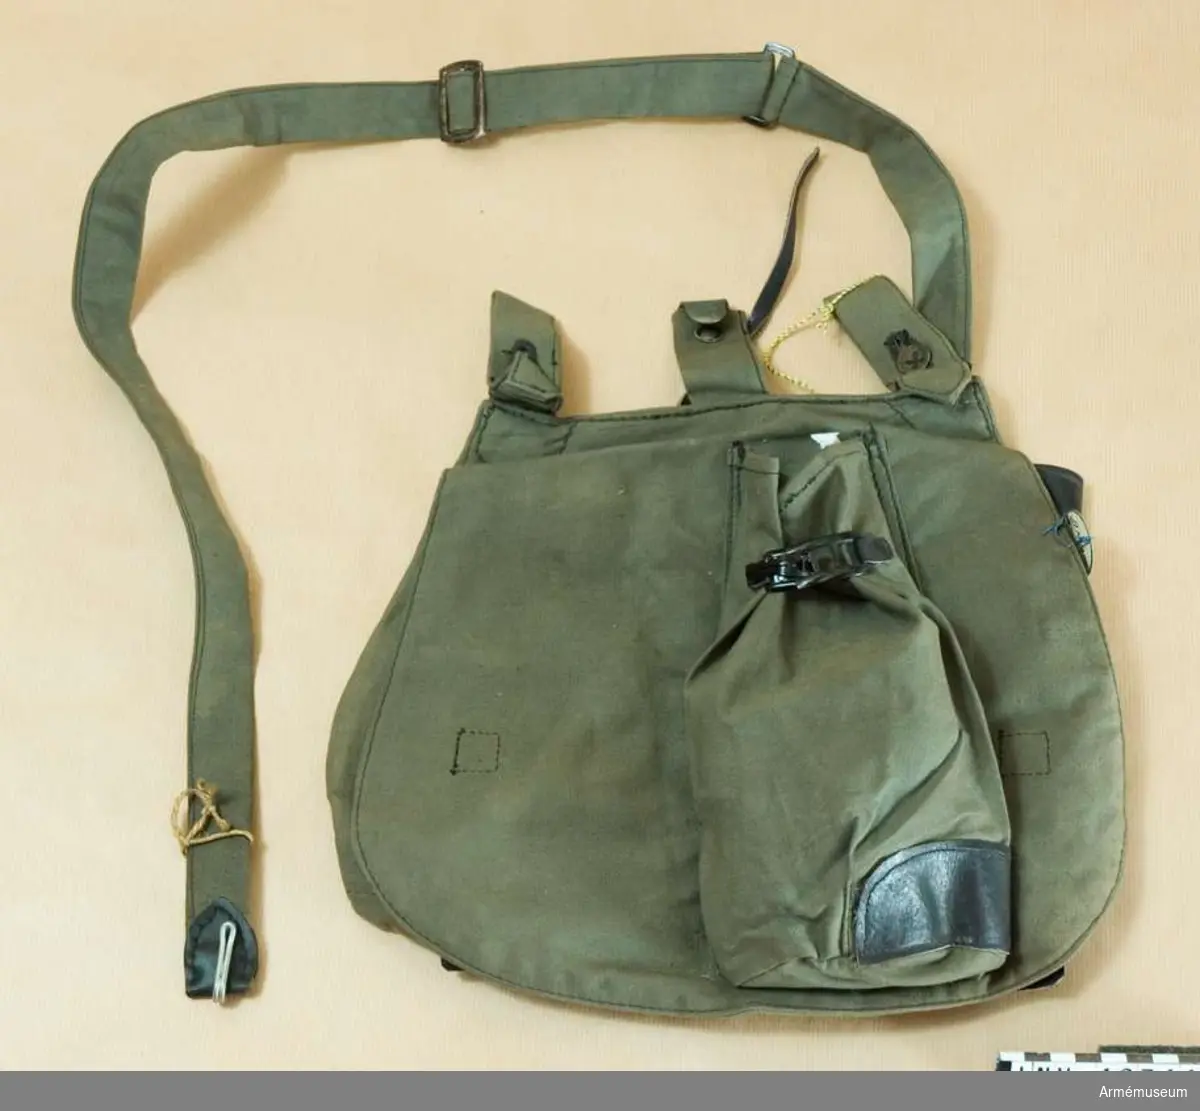 Grupp C II
Brödväska för menig, Holland. 1917. (Brotbeutel) av mörkgrått,tjockt tyg med två hylsor som stänges med knappar och krok för att hänga väskan på bältet. På framsidan finns en ficka som stängs med sölja. På väskans inre sida finns en ficka av svart läder med lock som stängs med knapp och en stämpel "G.M. 1917". För att stänga väskan finns inuti två svarta läderremmar och  två knappar. Väskan har axelgehäng av samma tyg med ring och spänne.
